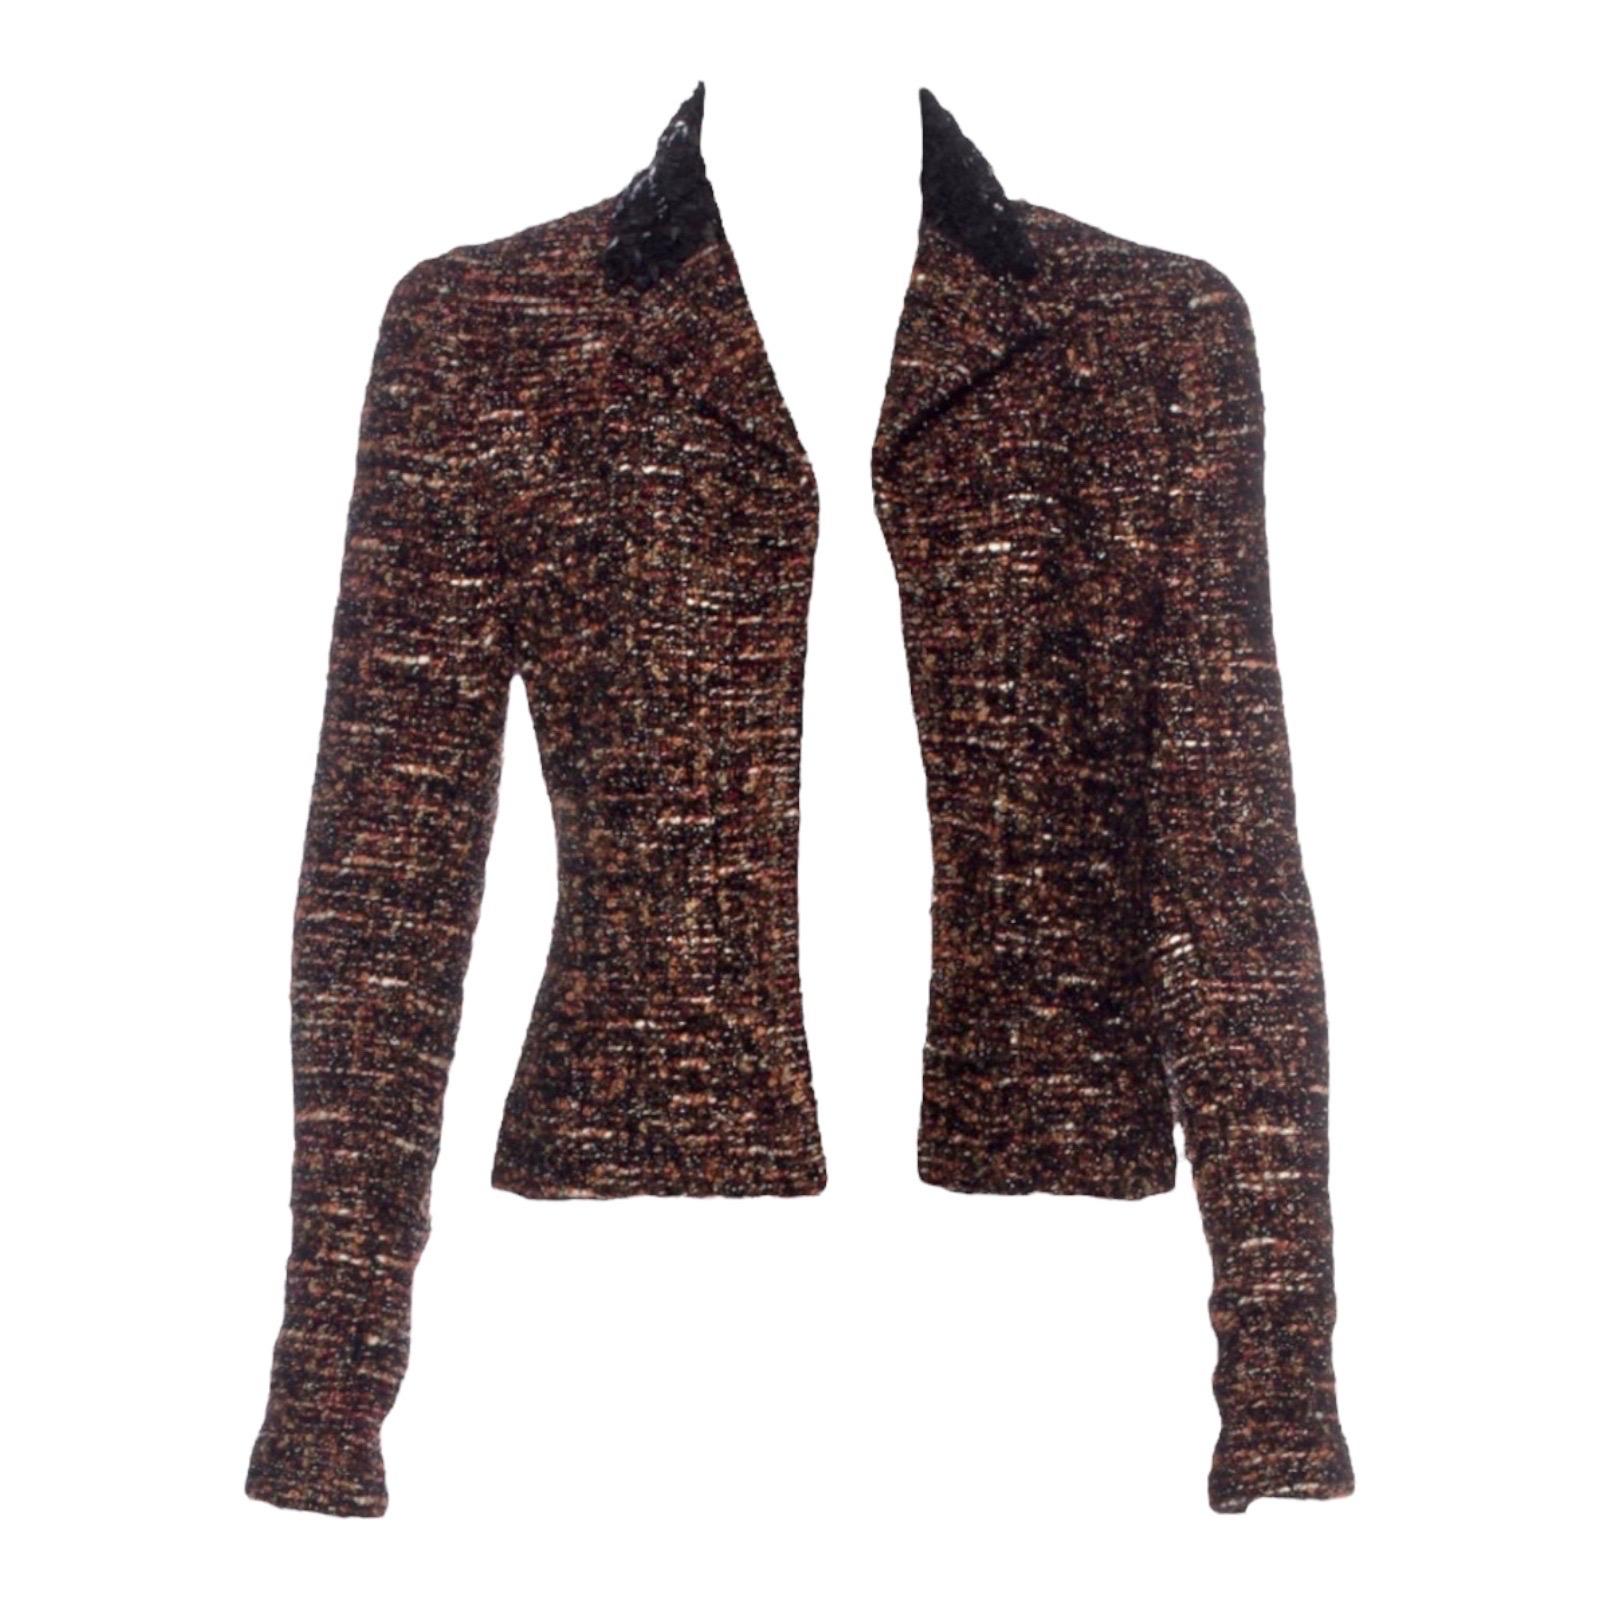 Black UNWORN Chanel Metallic Fantasy Tweed Sequin Trim Jacket Blazer Skirt Suit 38-40 For Sale